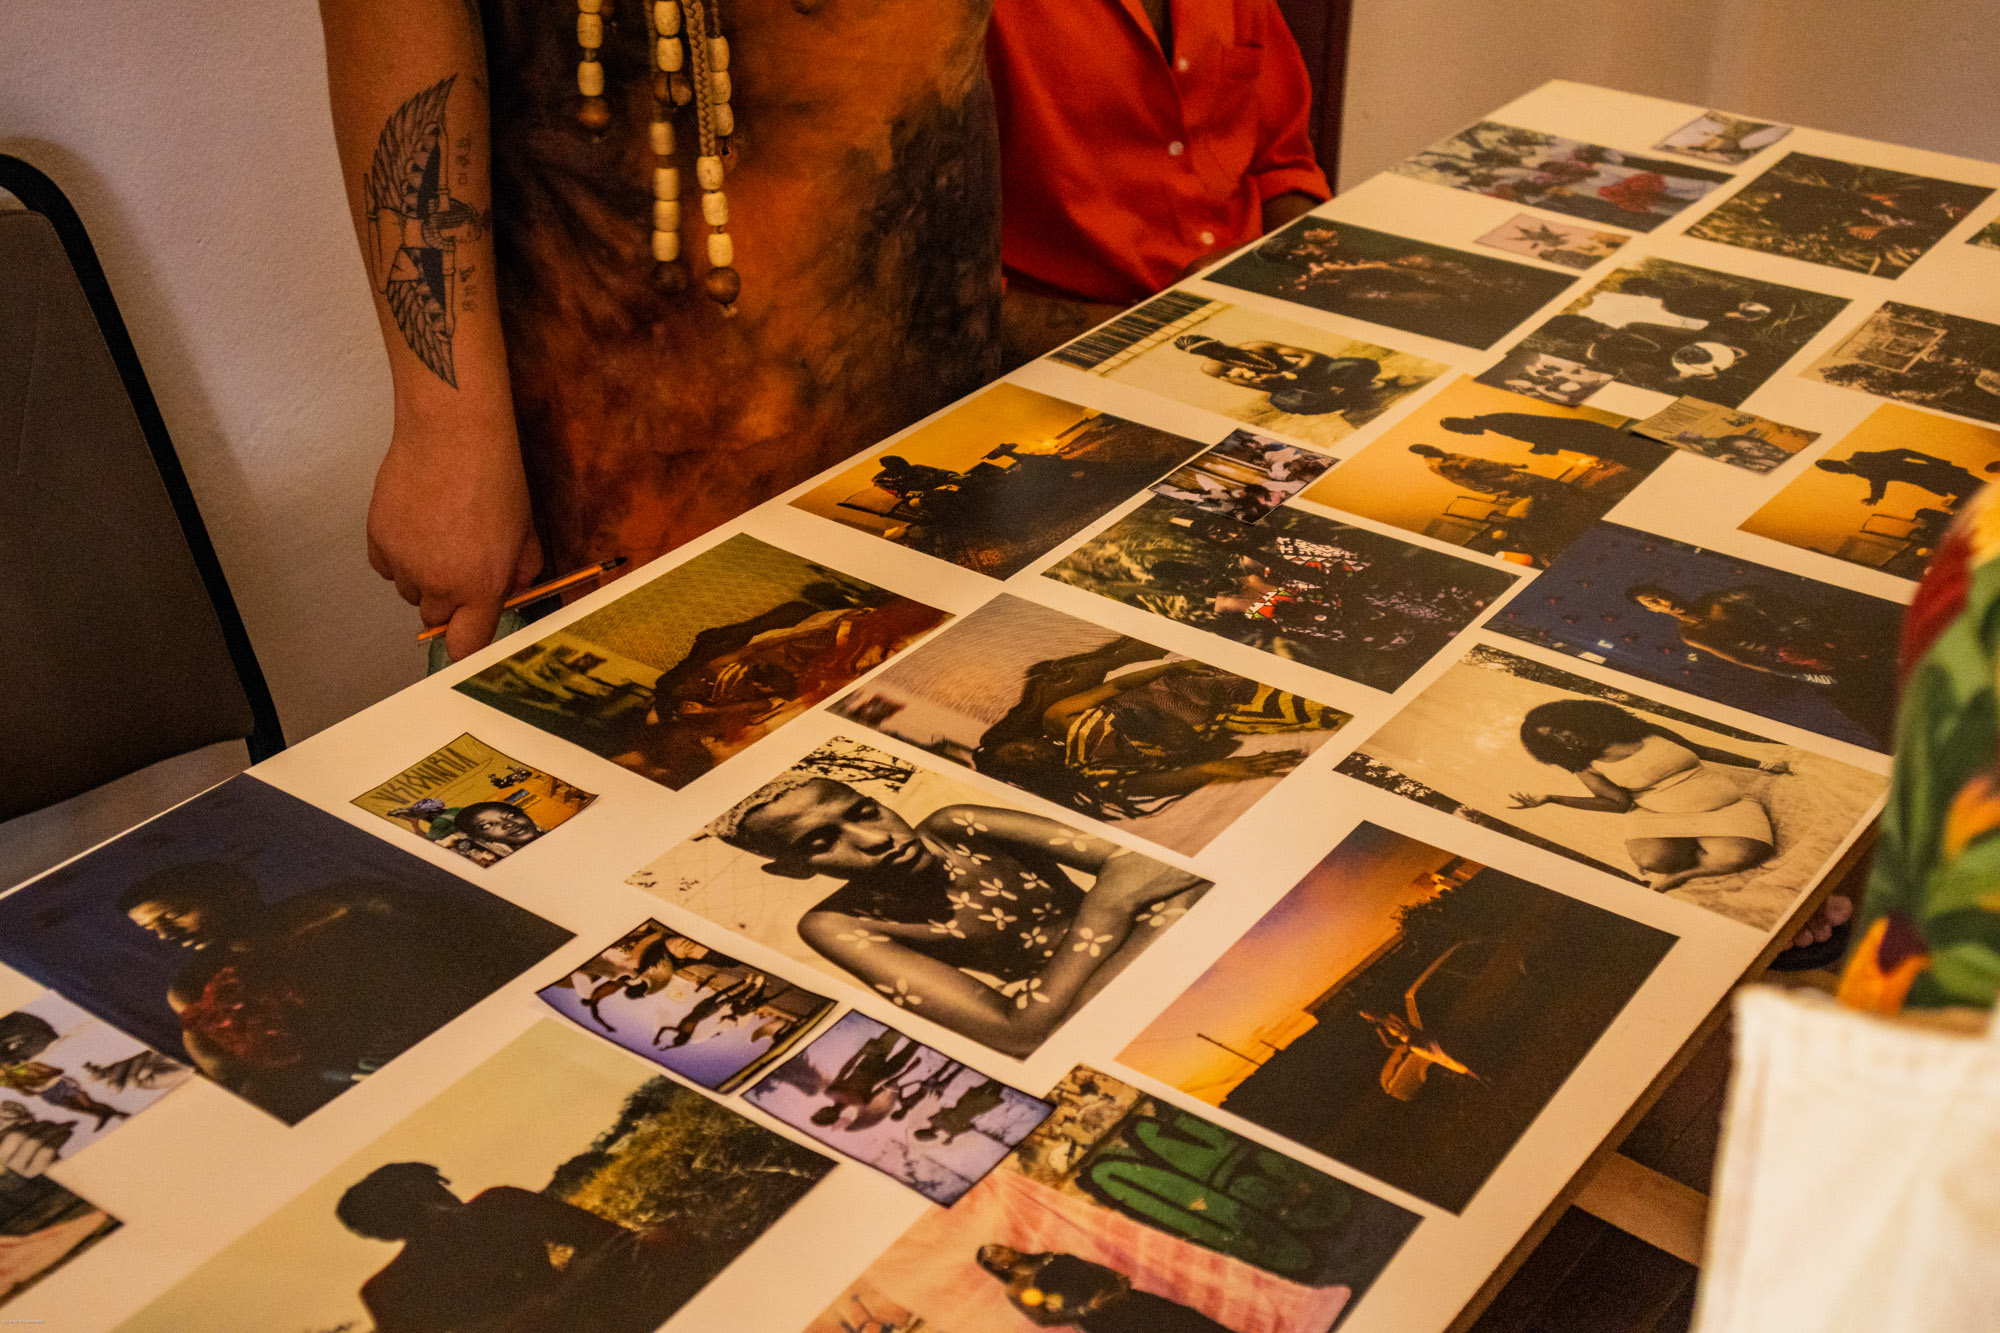 Mostra de portfólios no XIII Festival de Fotografia de Tiradentes permite diálogo direto com artistas